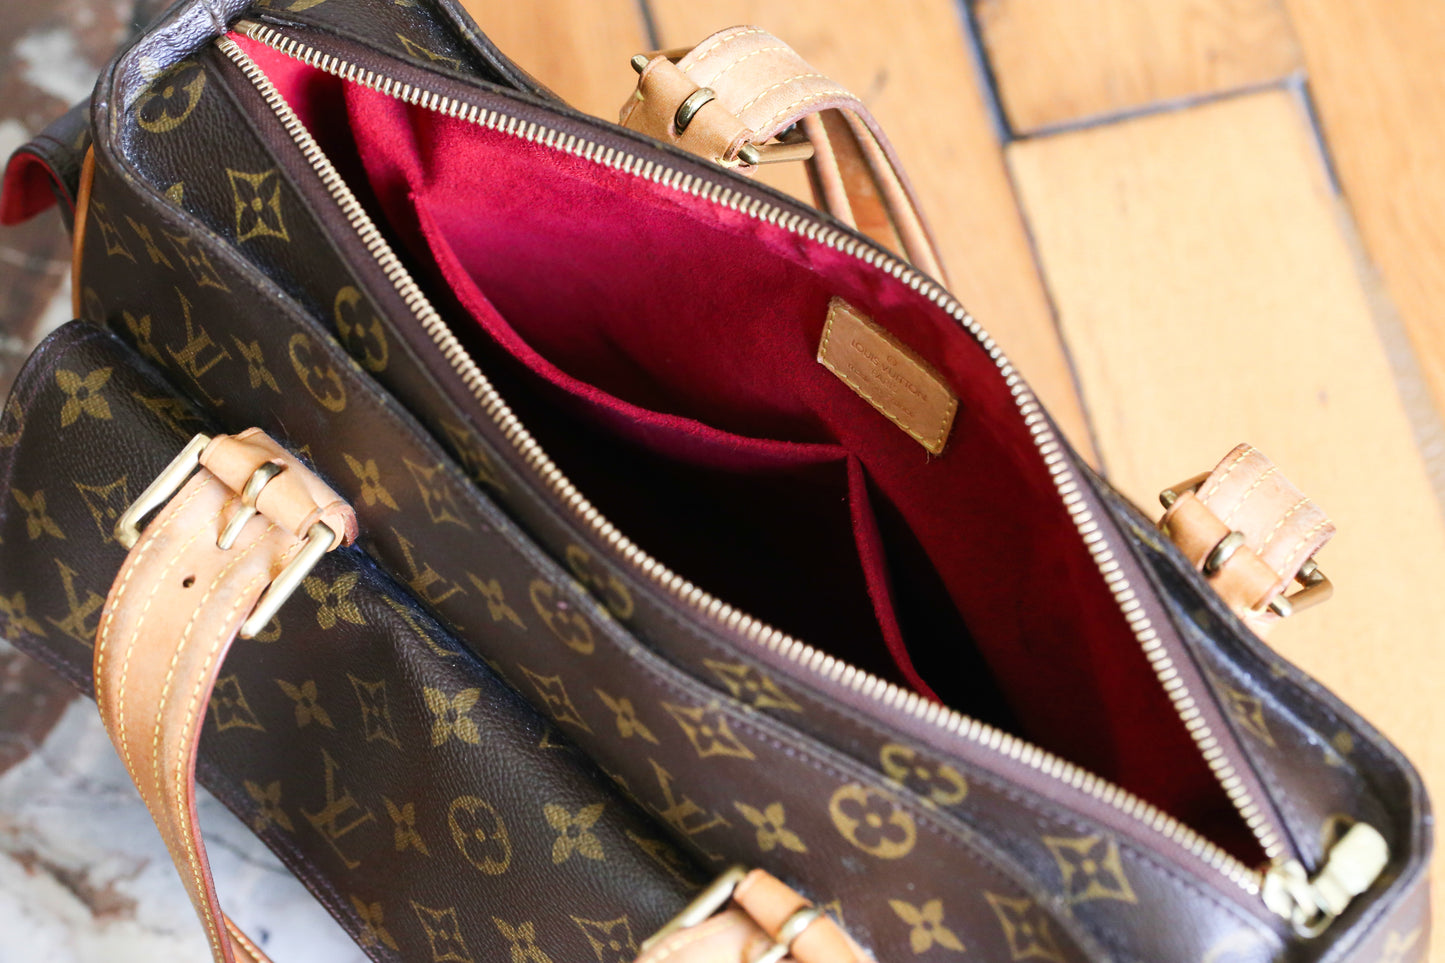 Louis Vuitton sac à main modèle multipli cité en toile et cuir